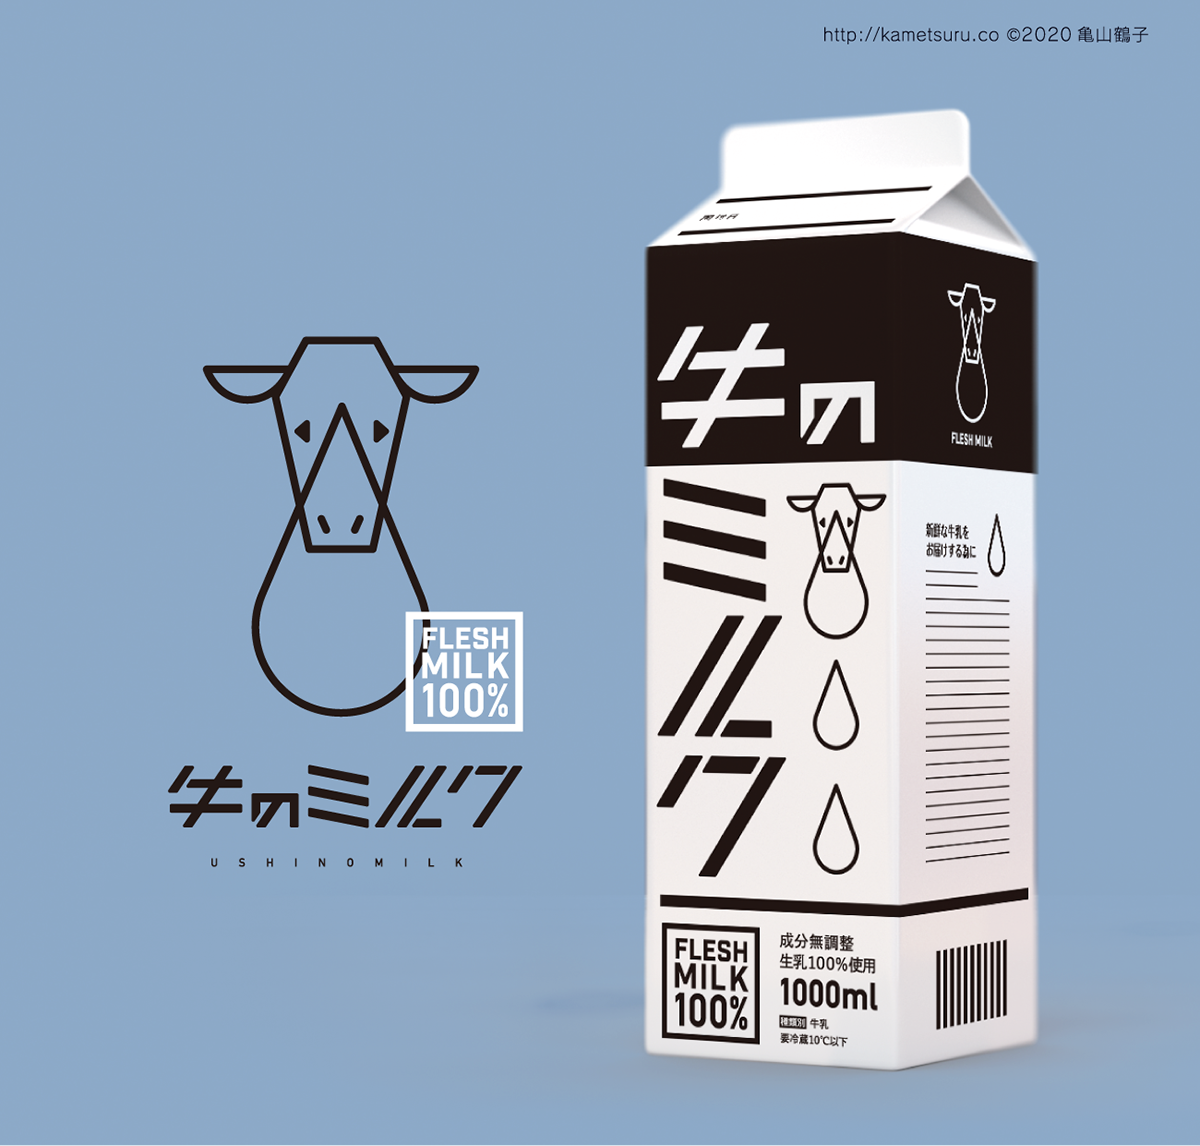 cartoon cow design ILLUSTRATION  logo milk Milk Carton 牛乳 牛乳パック